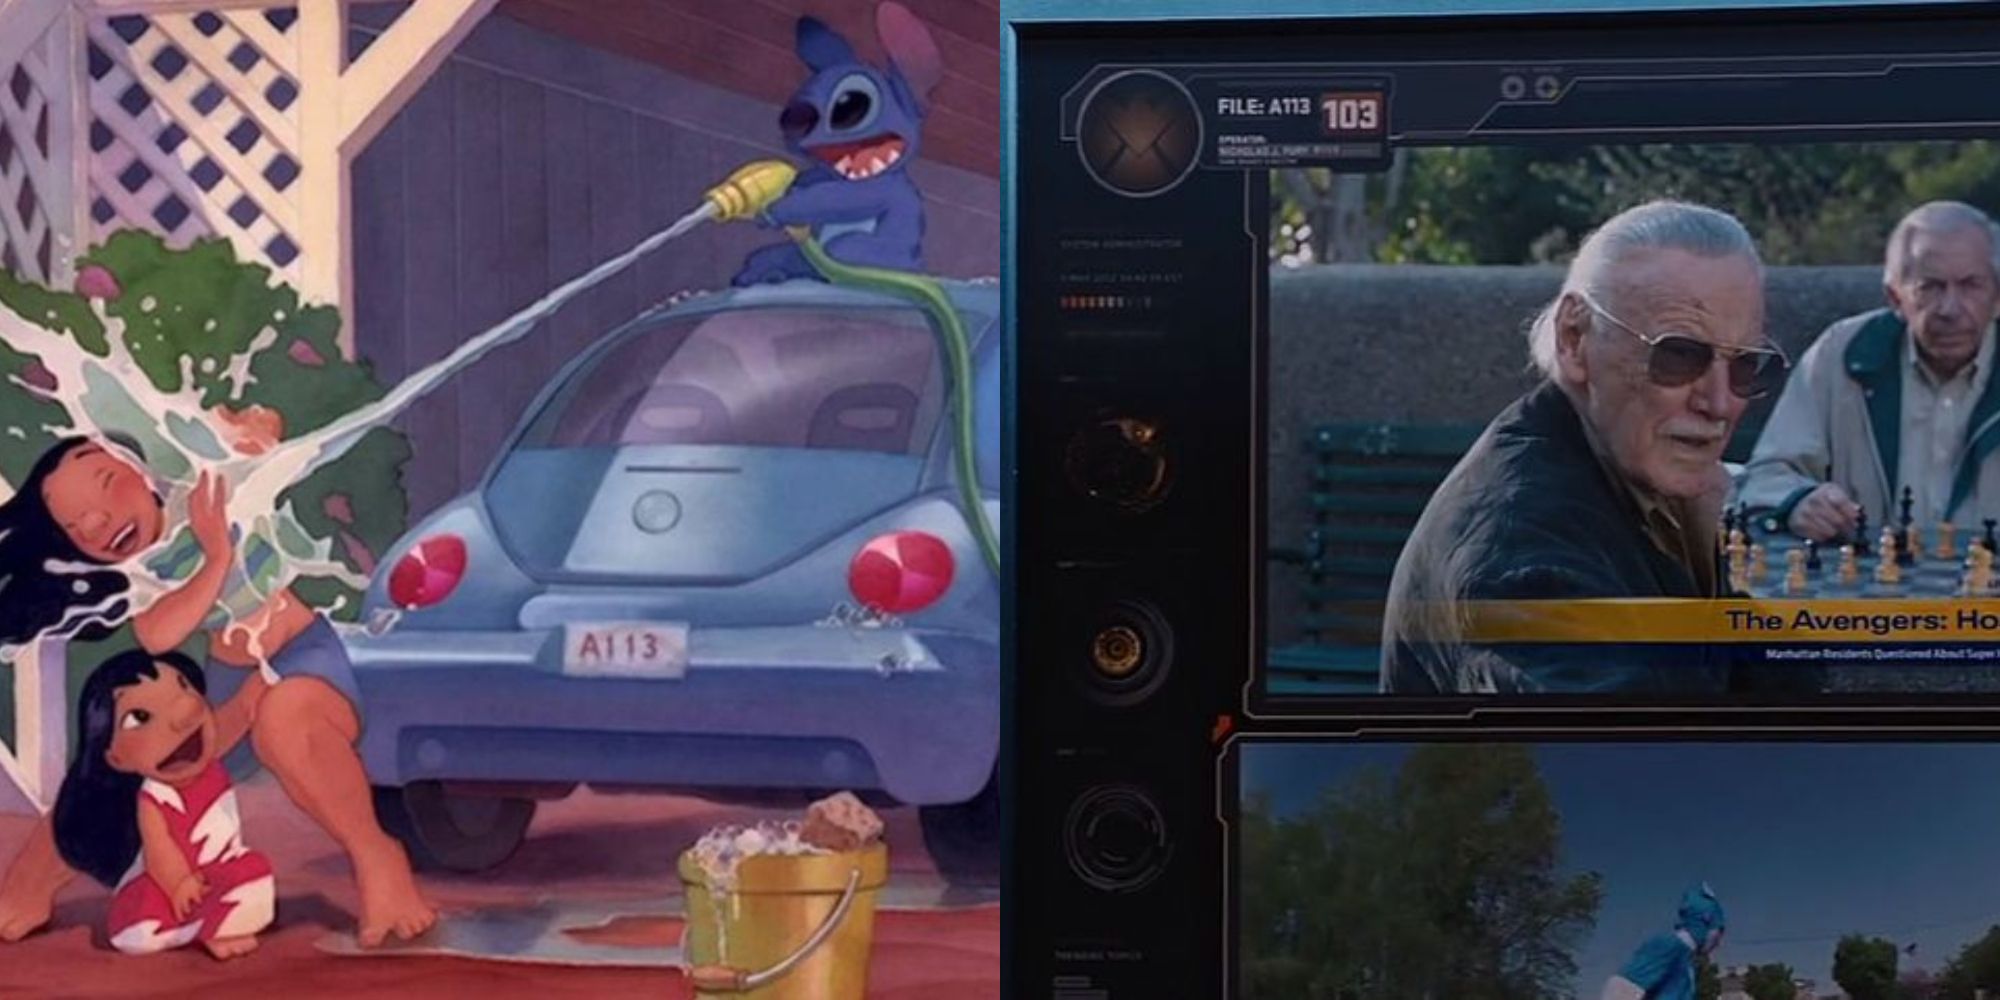 Los 10 mejores huevos de Pascua A113 en películas y programas de televisión que no son de Pixar